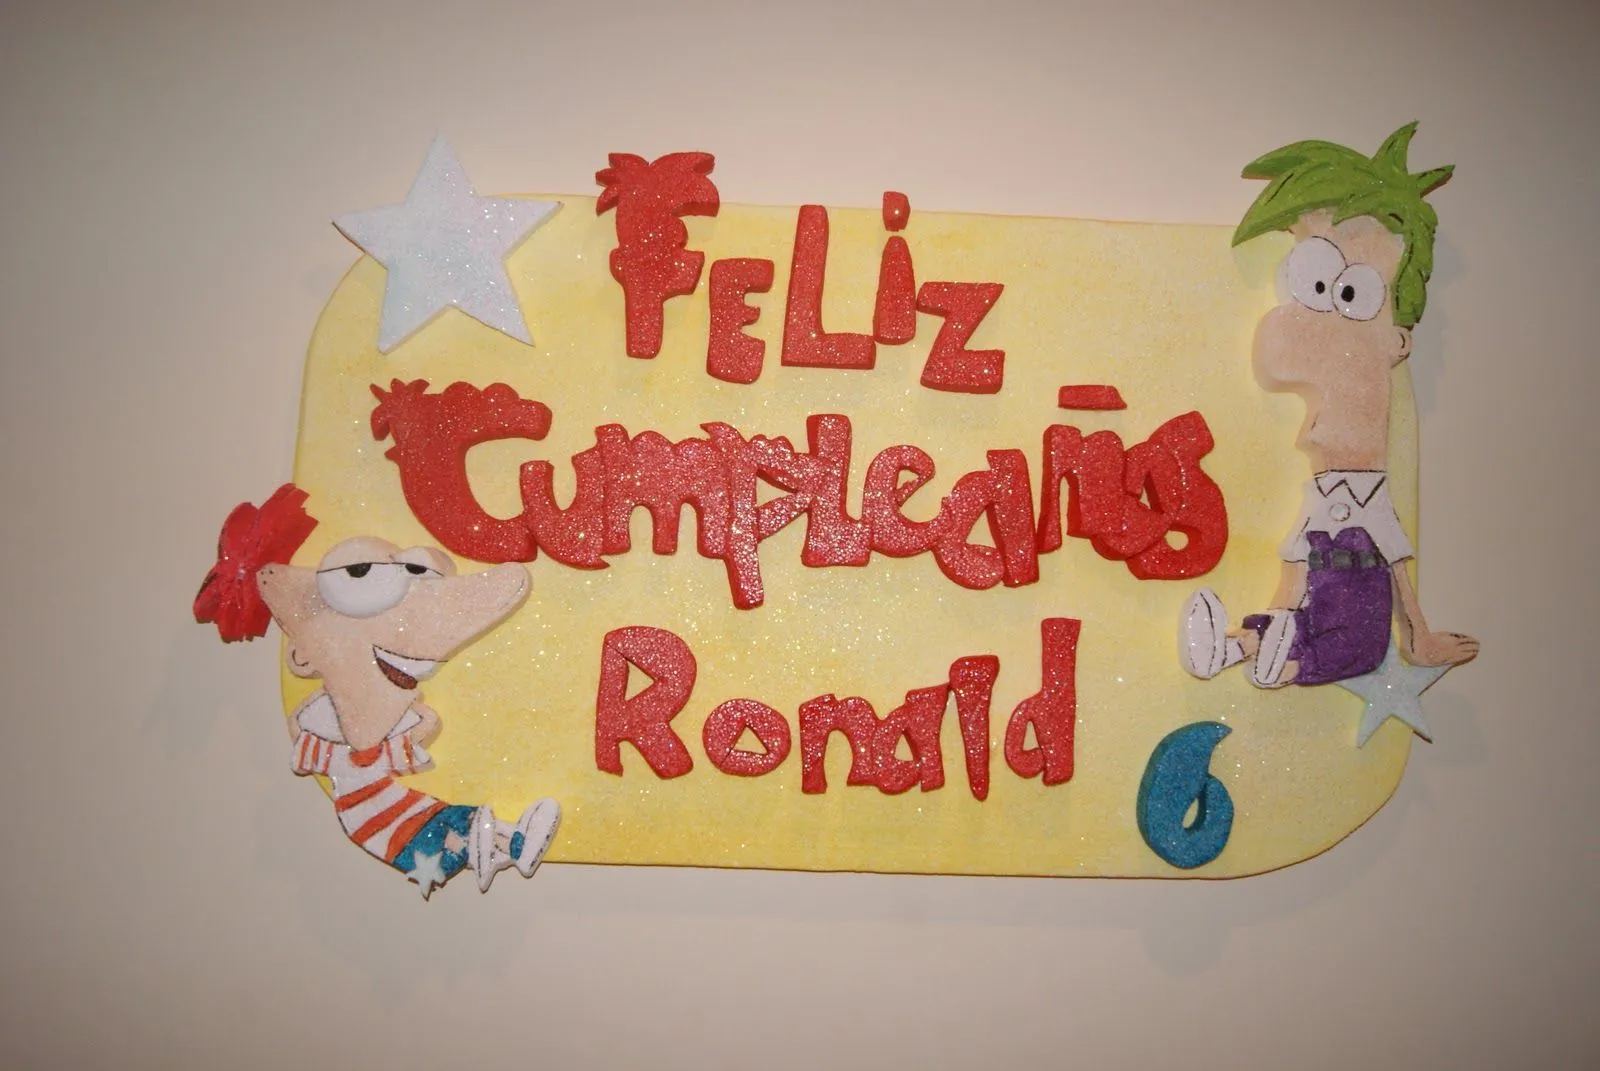 Decoración para Fiestas en Icopor ó Poliespan: Phineas y Ferb